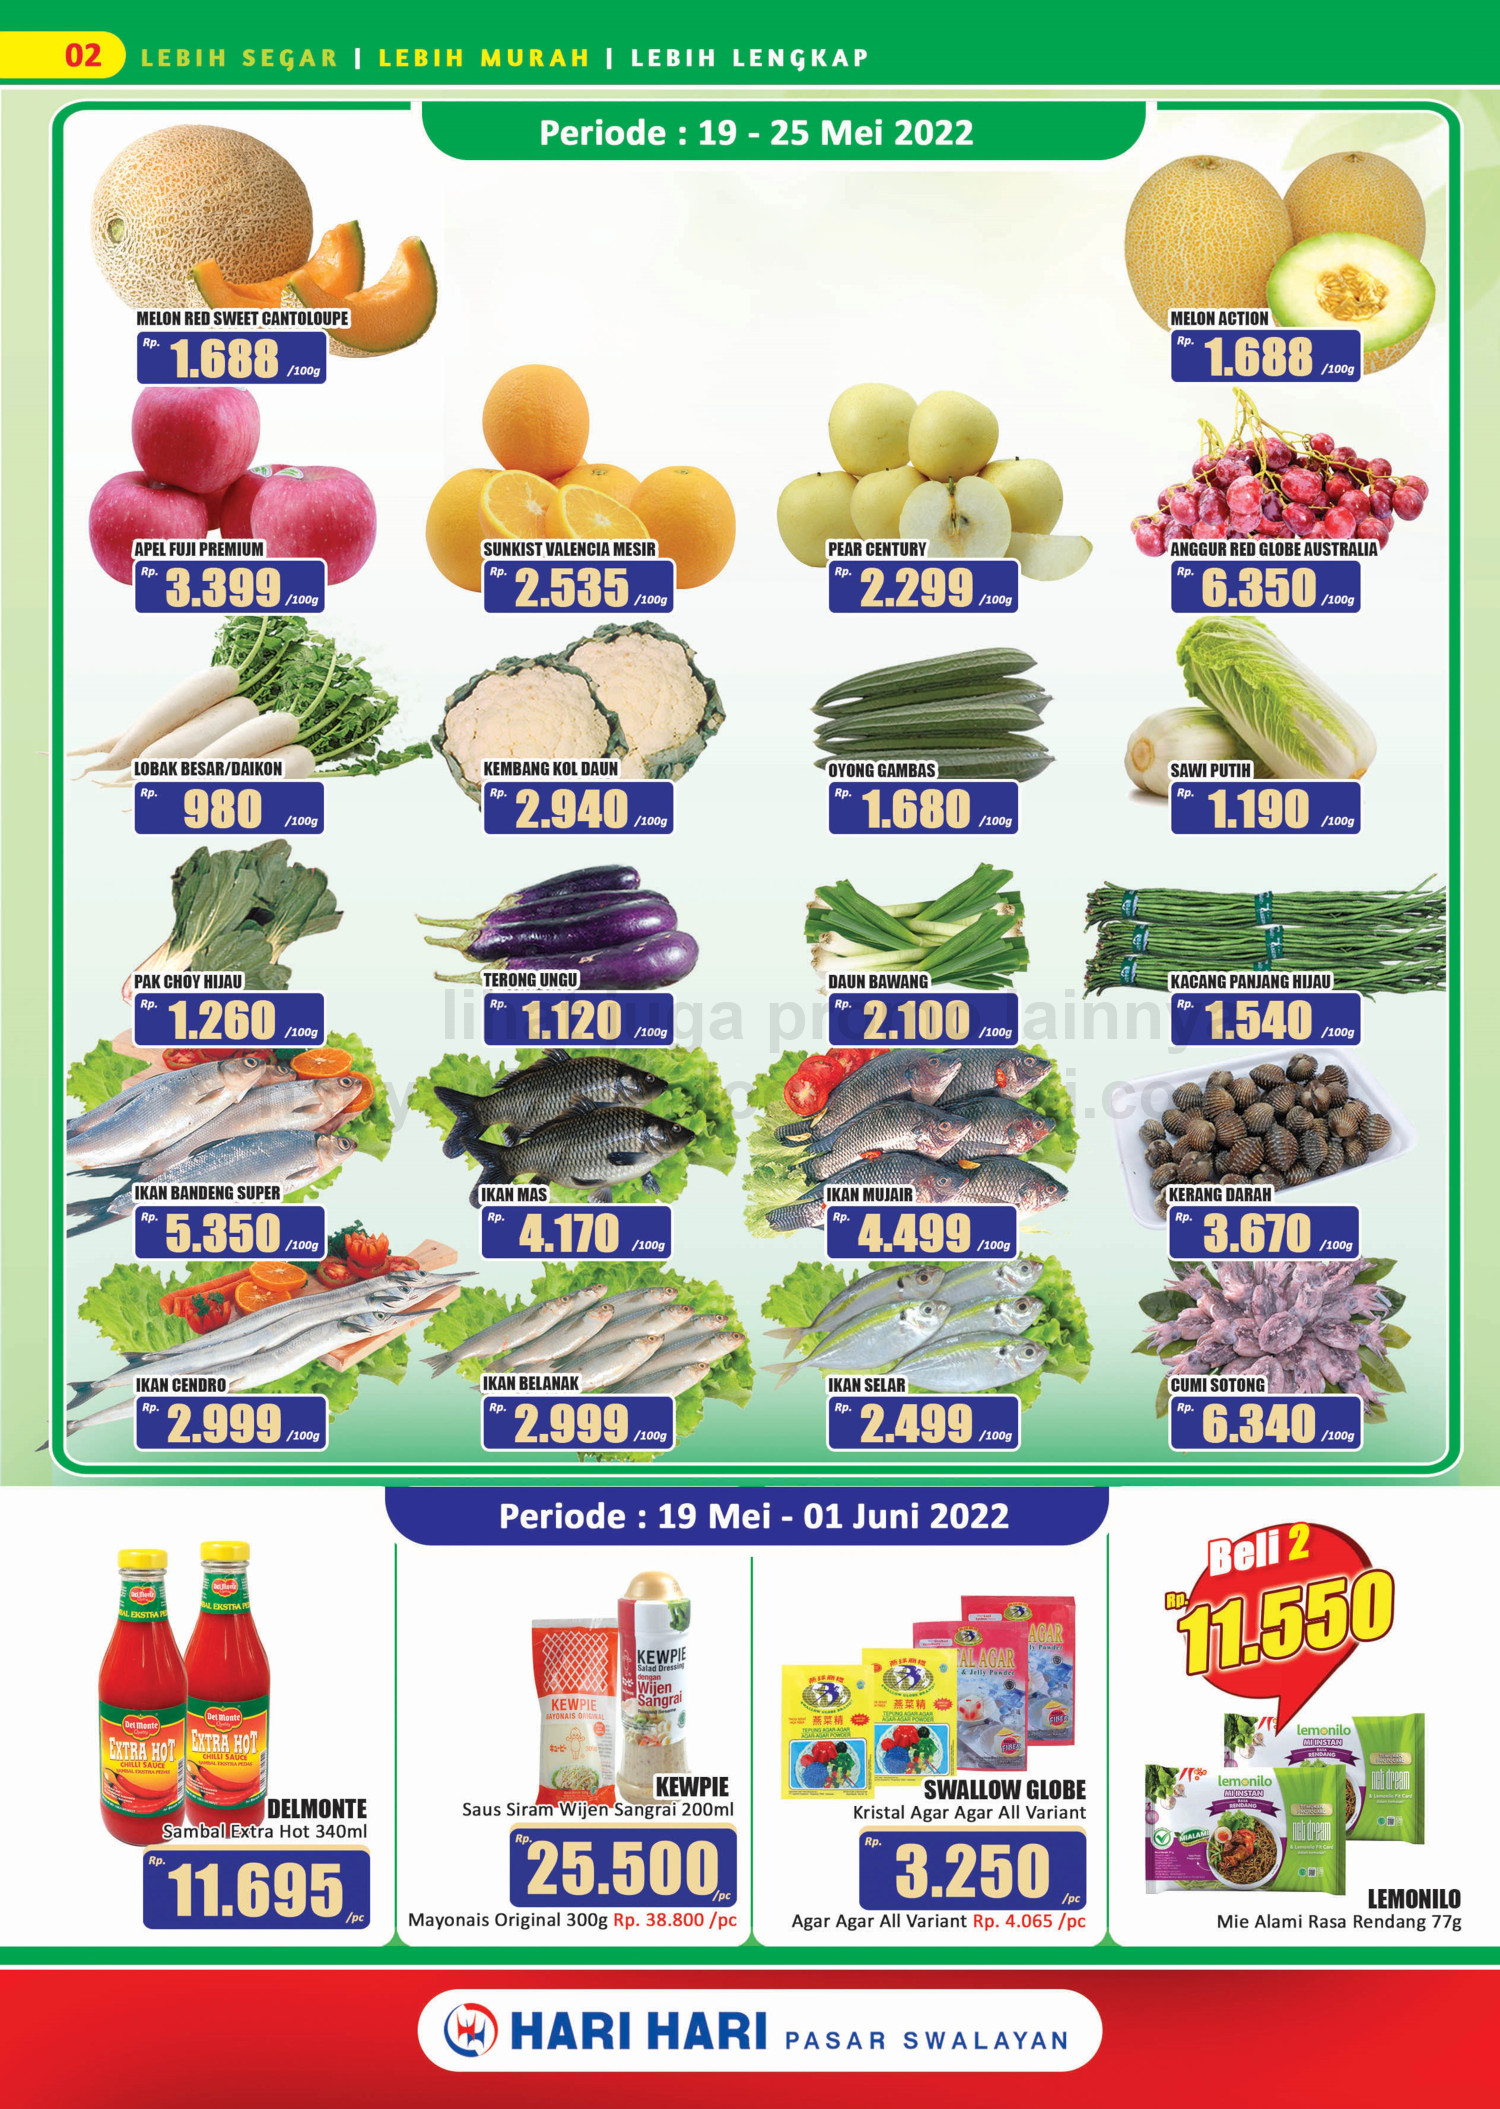 Promo Hari Hari Pasar Swalayan Katalog Mingguan Periode 19 Mei - 01 Juni 2022